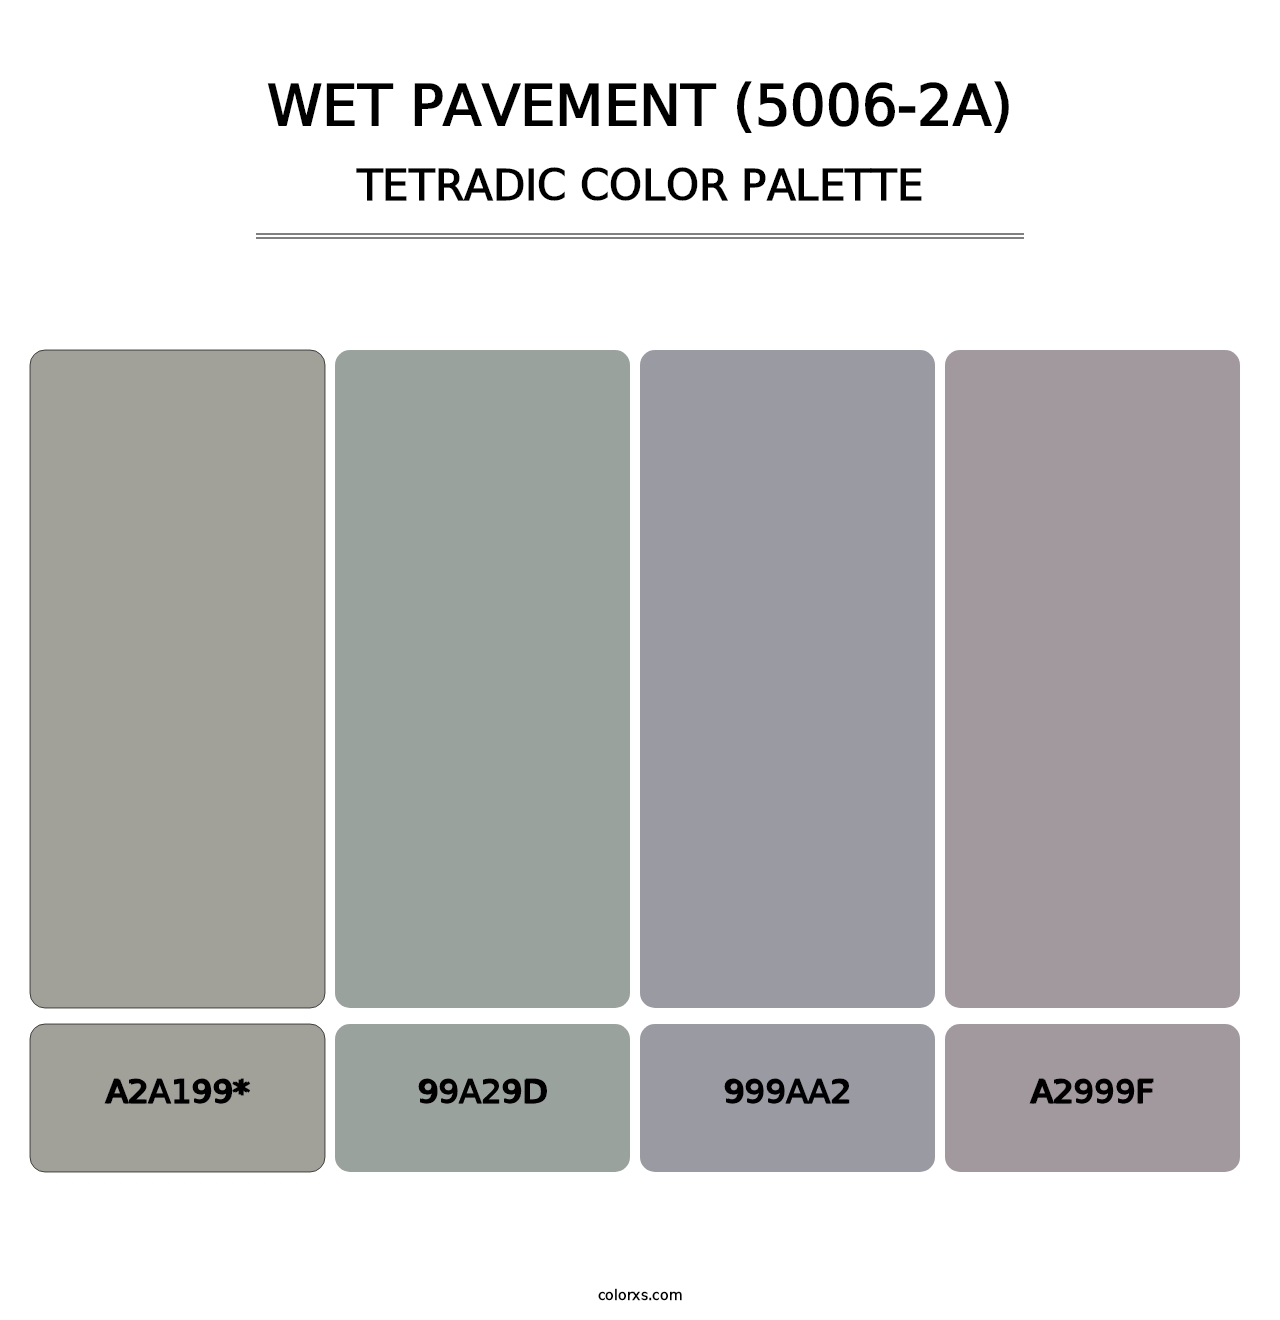 Wet Pavement (5006-2A) - Tetradic Color Palette